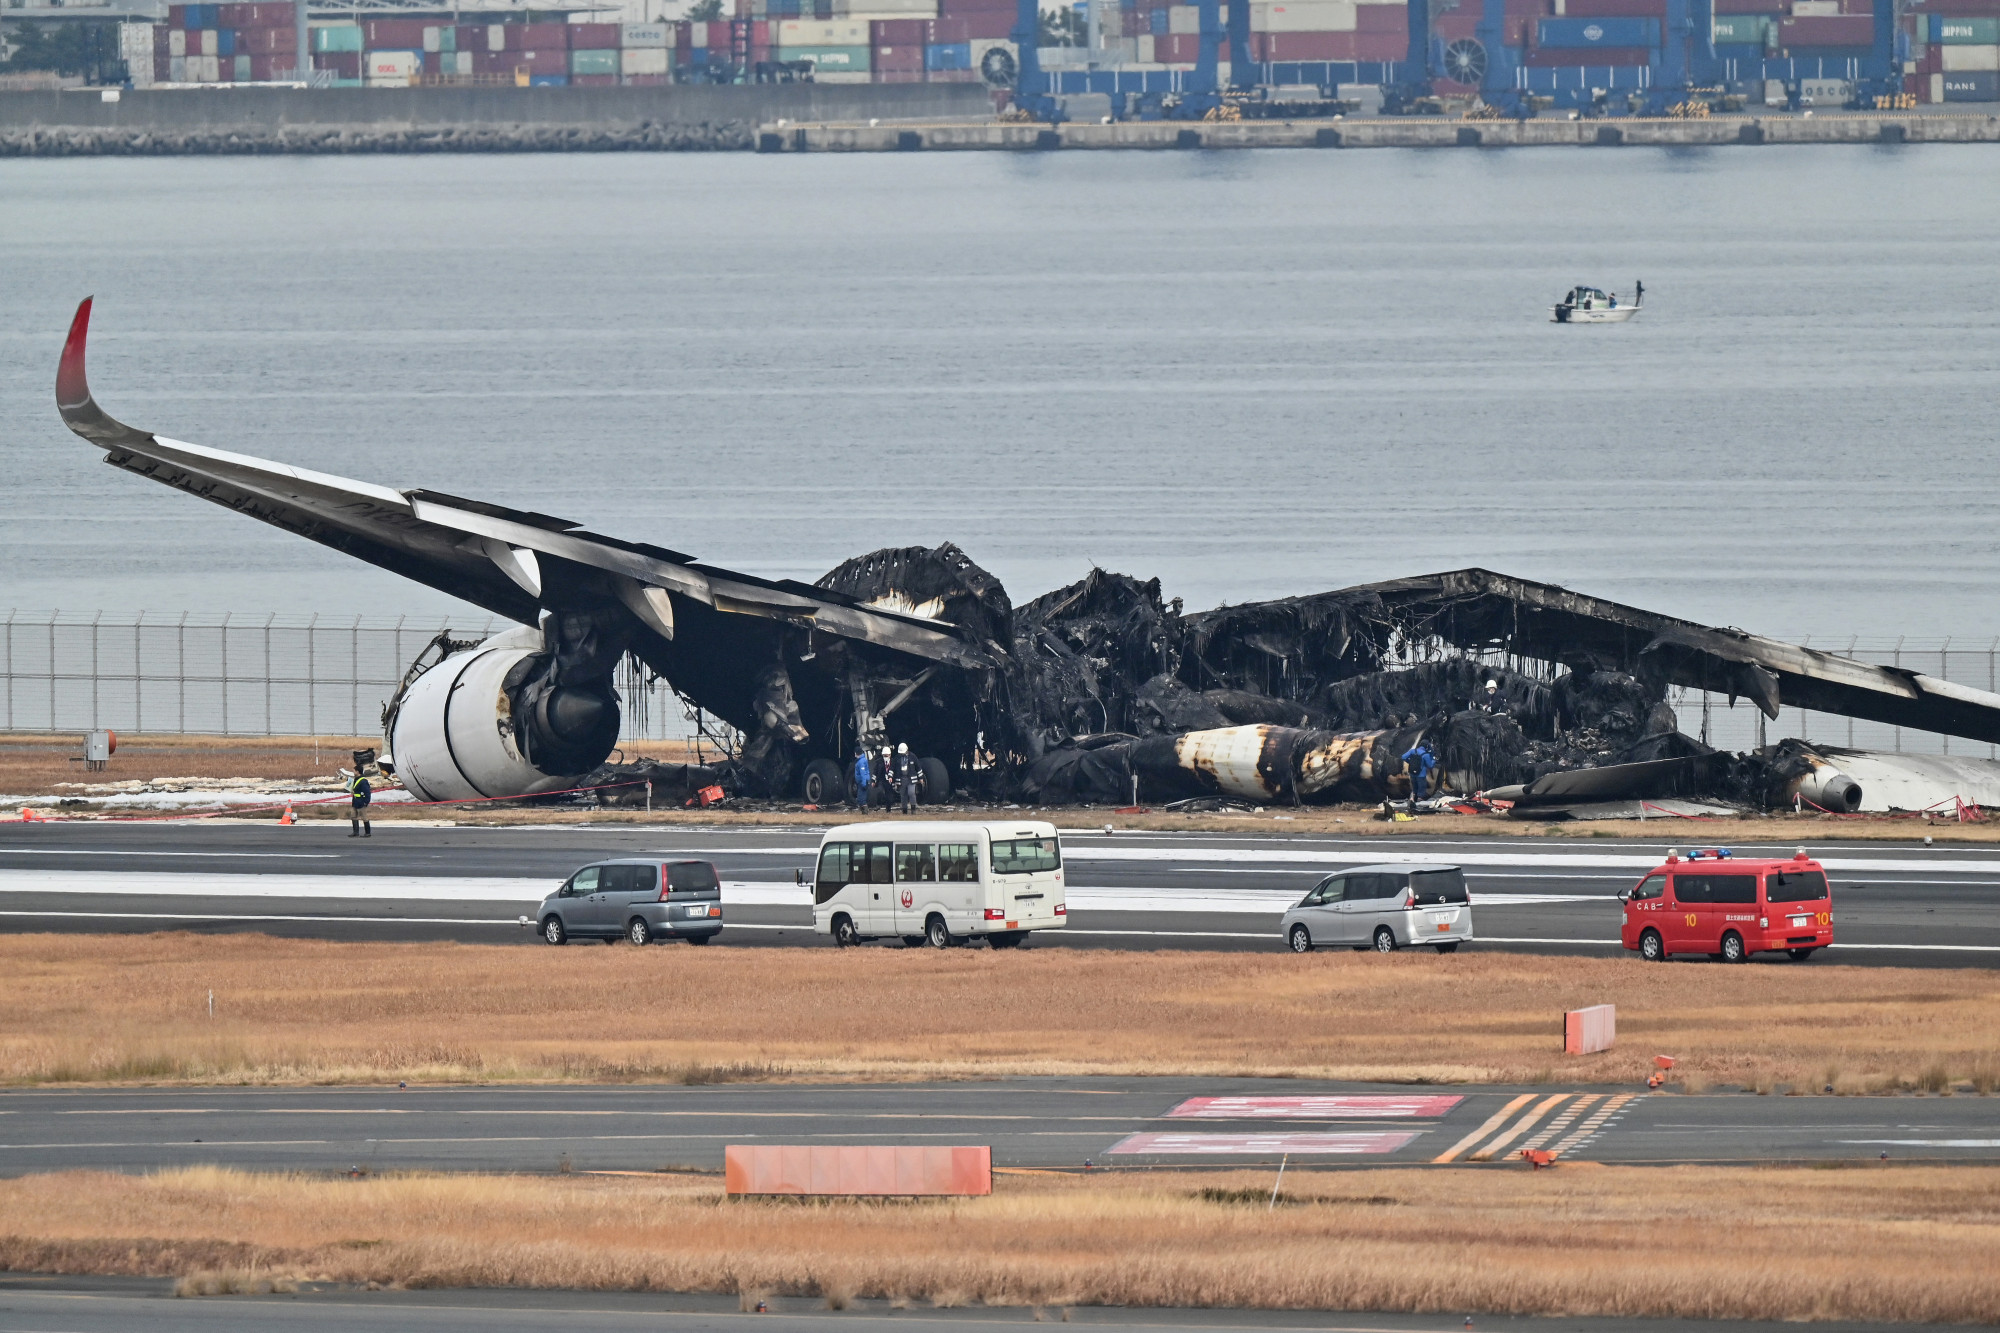 A Japan Airlines szerint a kisgéppel ütközött utasszállítójuk kapott leszállási engedélyt